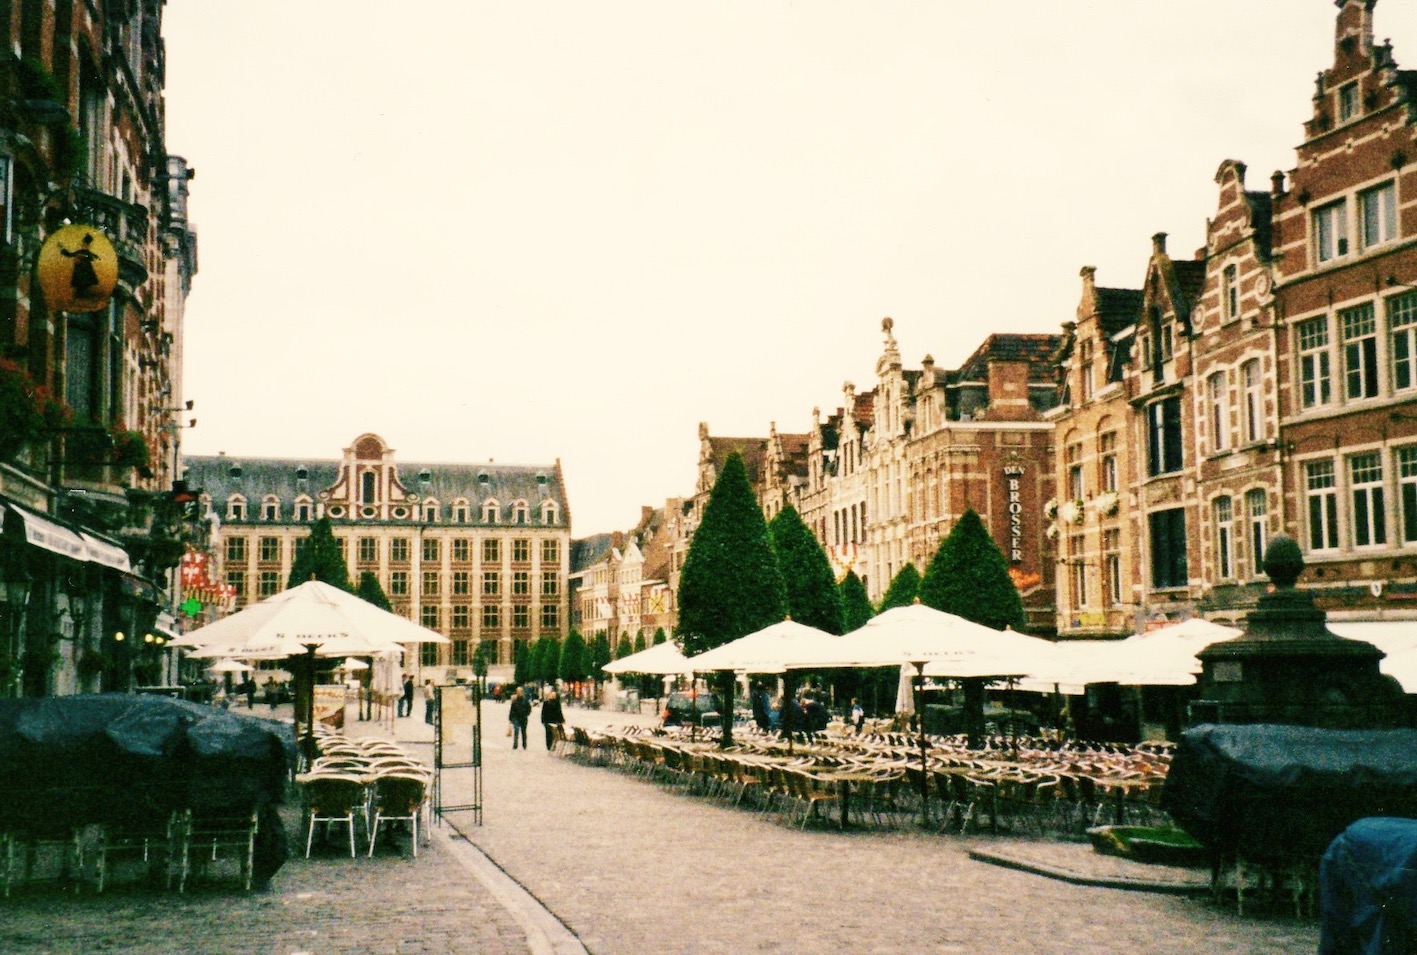 The Old Market De Oude Markt Leuven Belgium 2005.